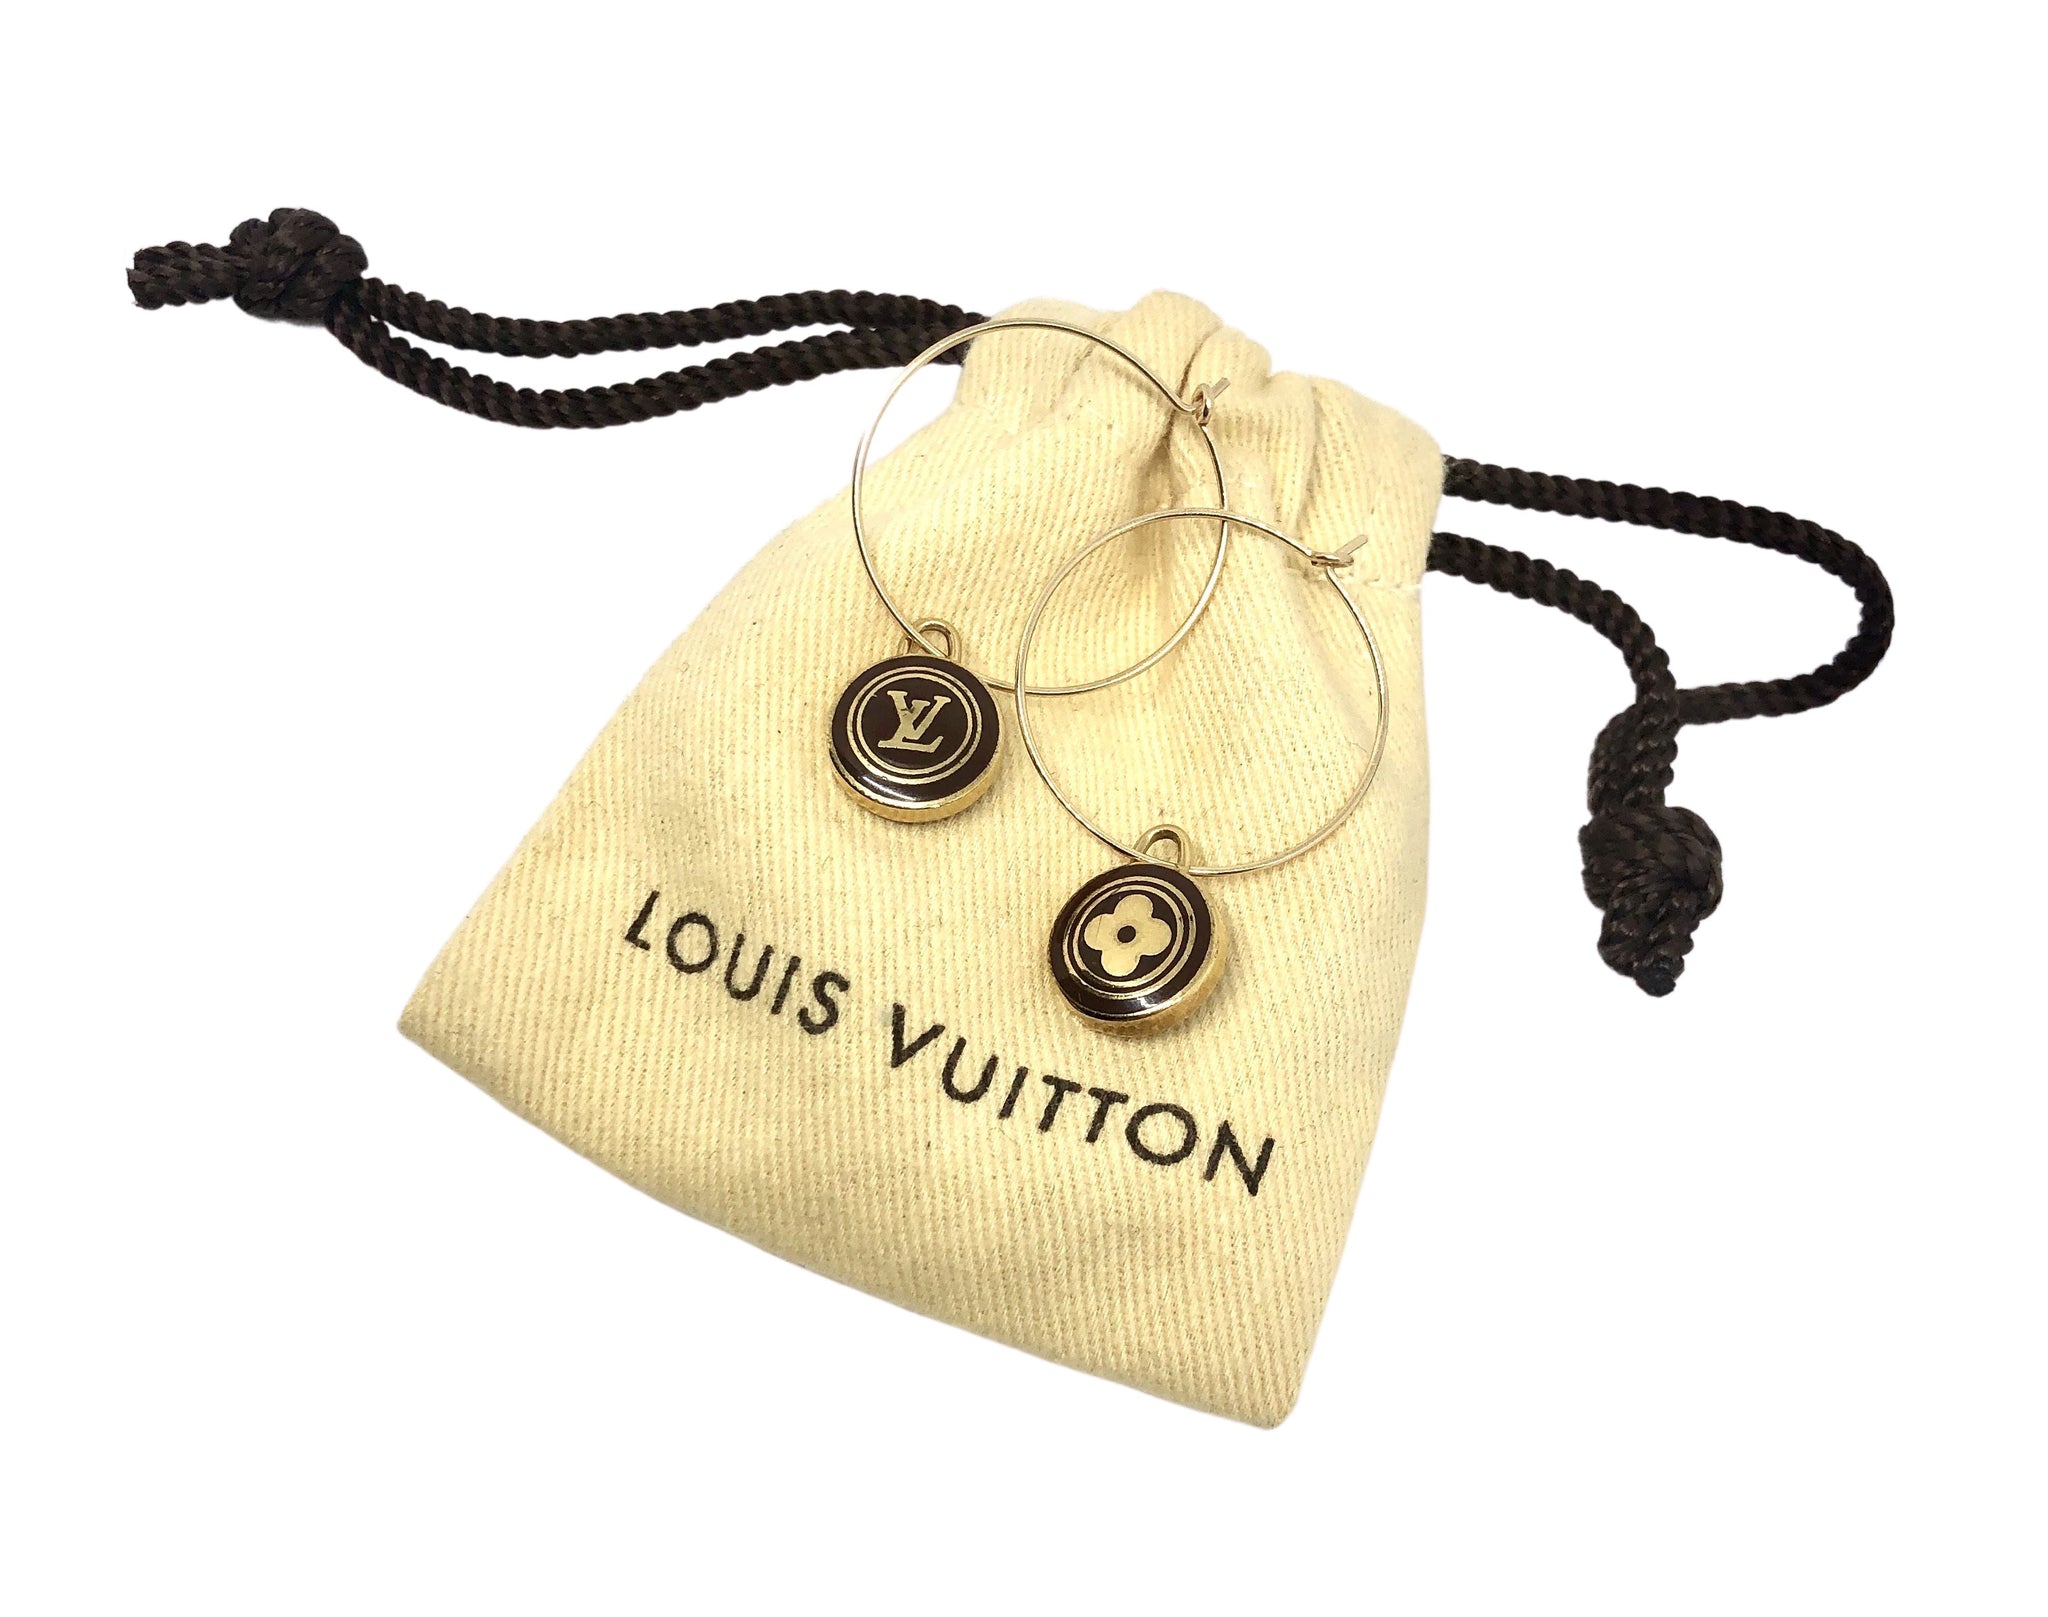 Lv Earrings Louis Vuitton Hoops - Shop on Pinterest